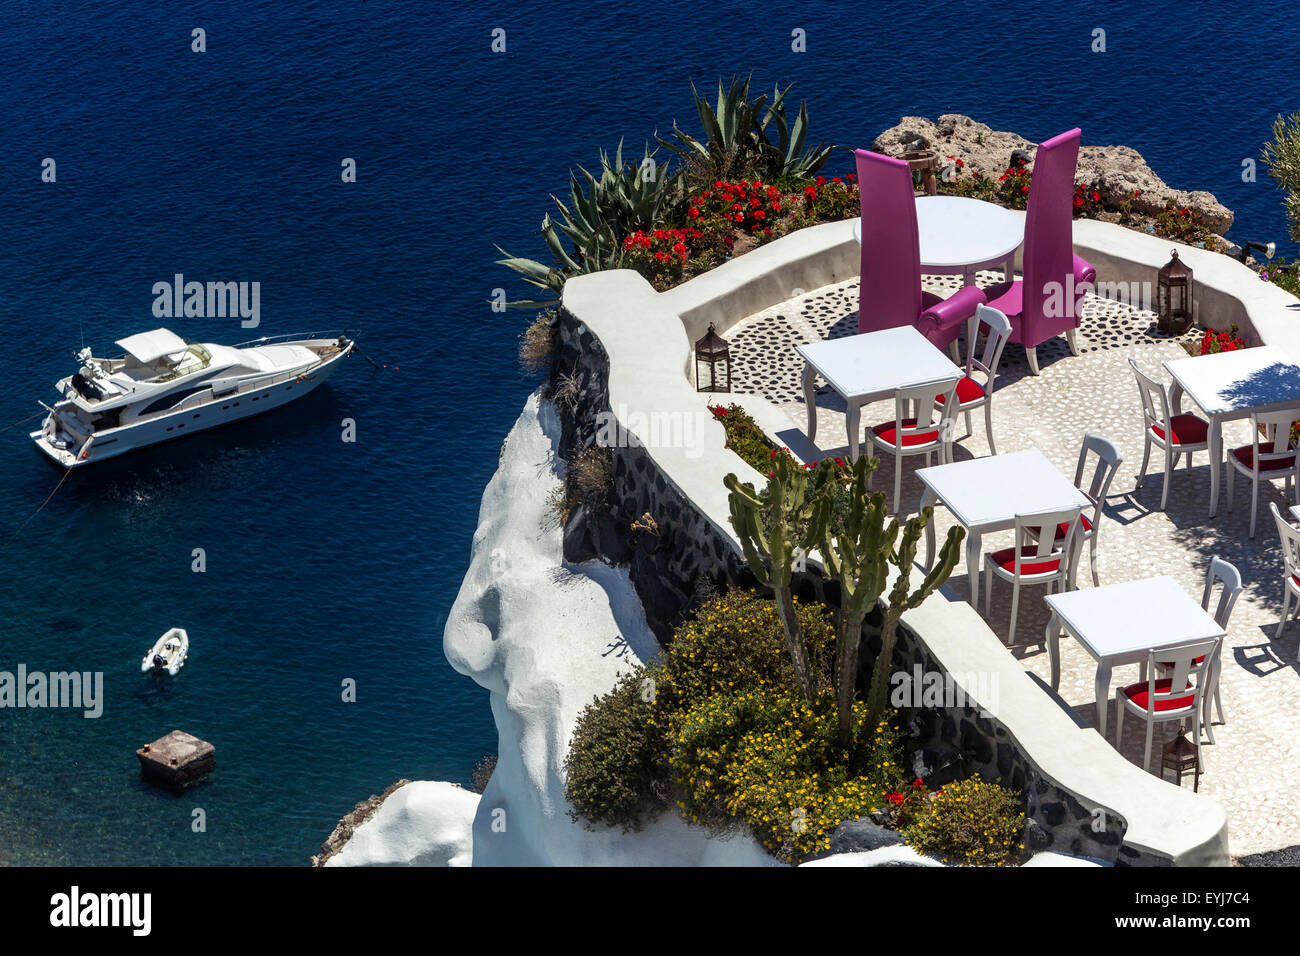 Luxus-Platz über dem Meer Blick Santorini Restaurant Esstisch bereit für Gäste Oia griechische Inseln, Kykladen, Griechenland Yacht Luxus Lifestyle Stockfoto